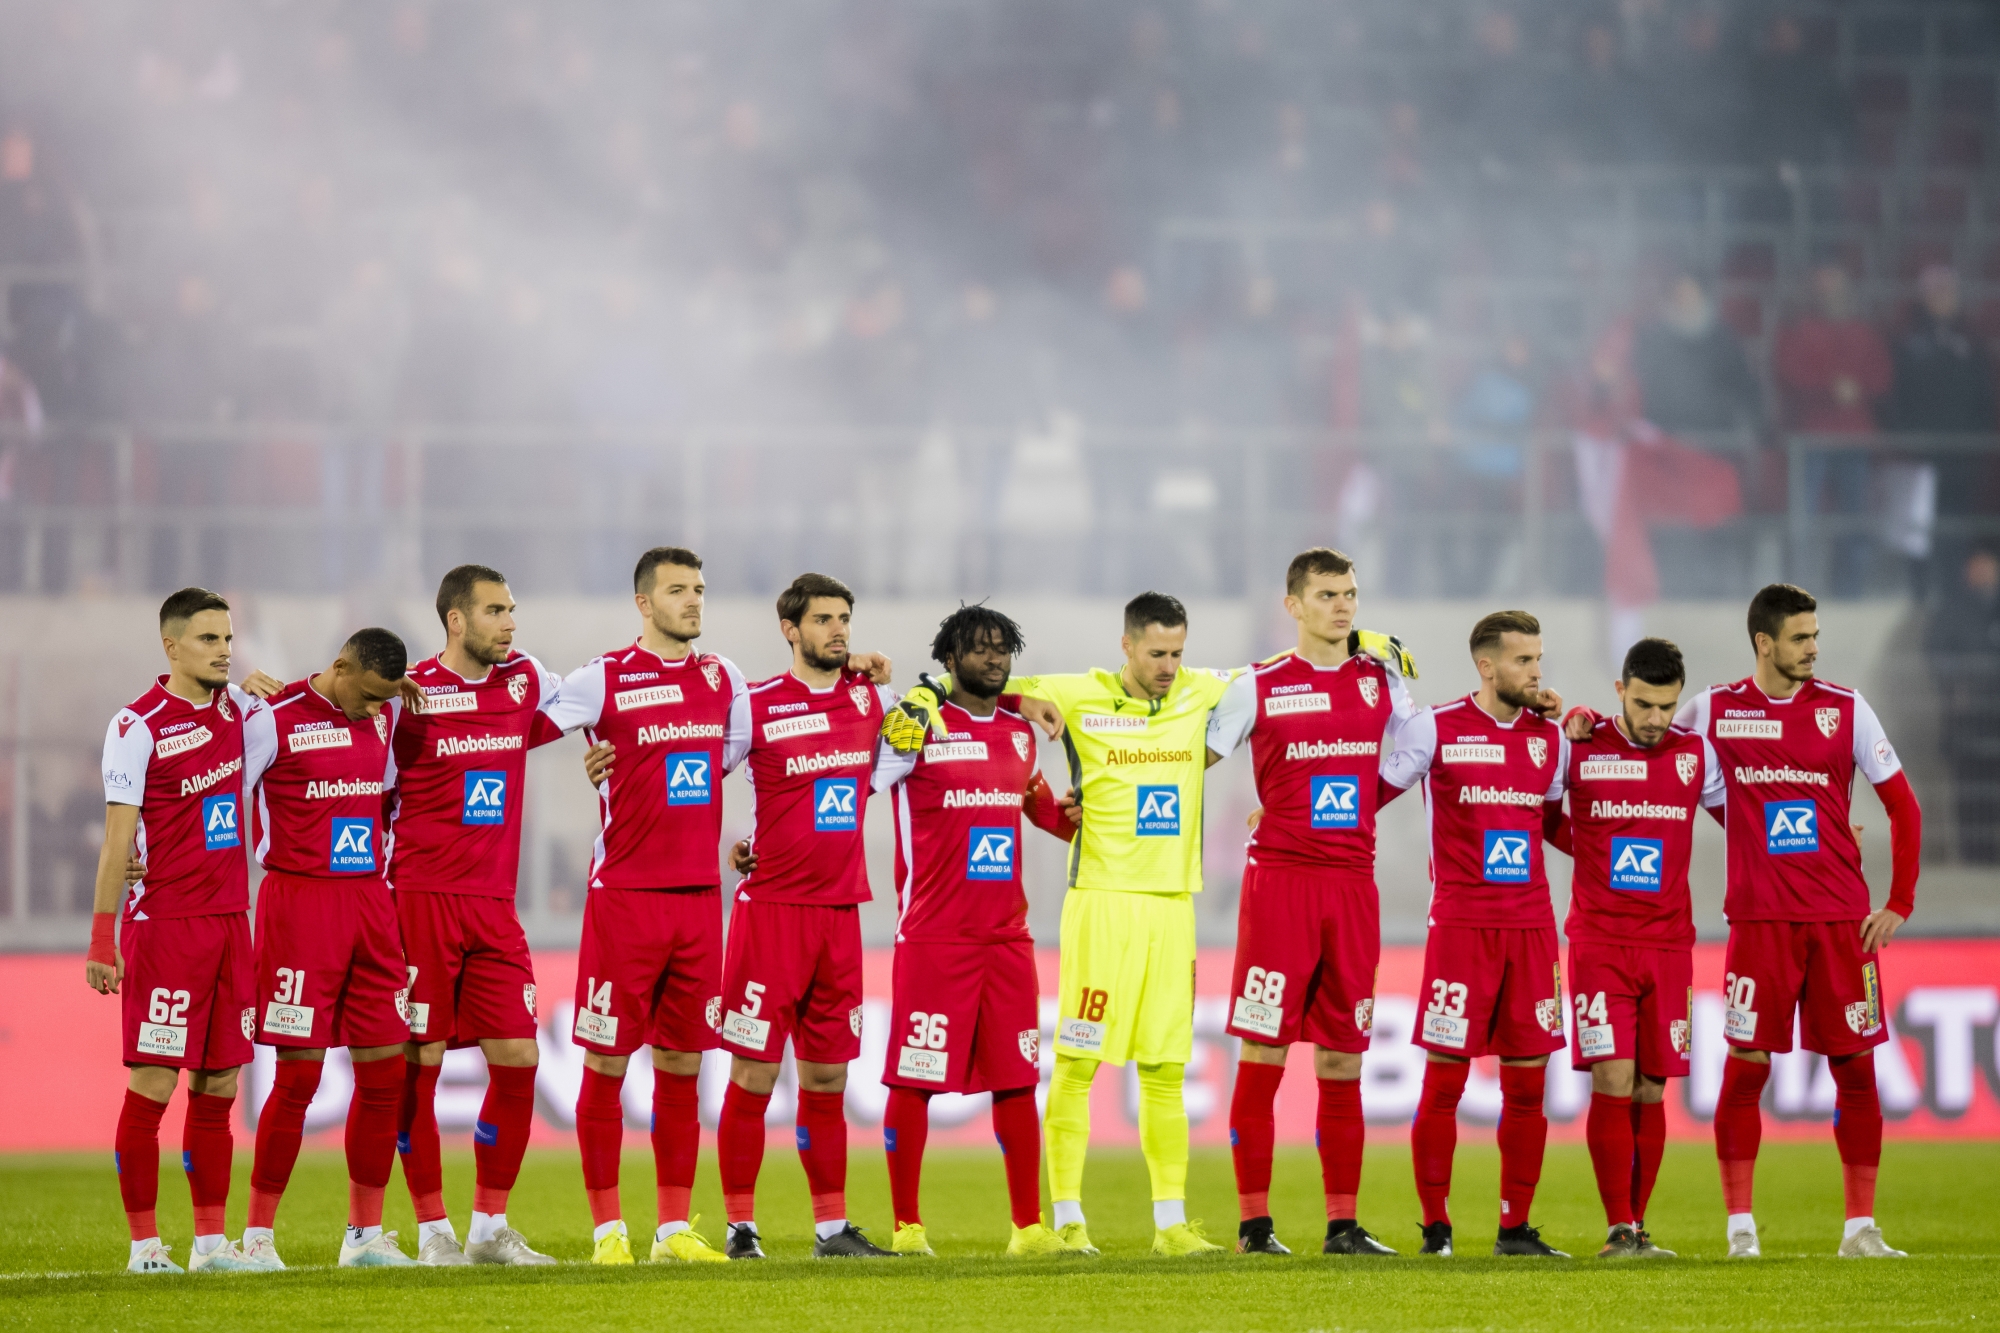 Les joueurs du FC Sion observent une minute de silence à la mémoire de Köbi Kuhn avant la rencontre face à Thoune au stade de Tourbillon.